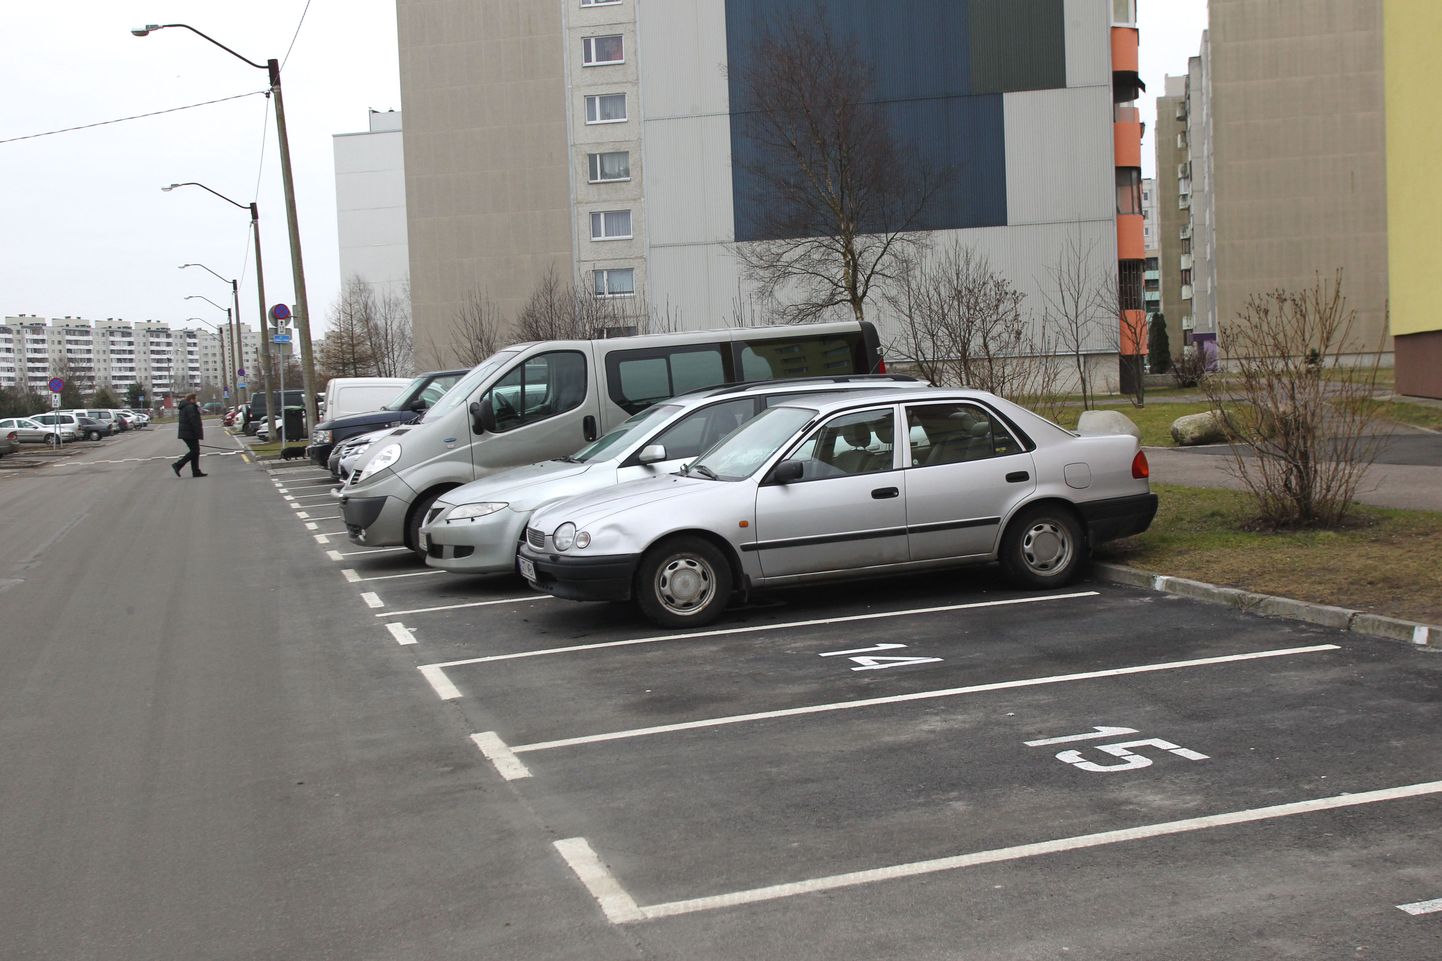 Парковка у многоквартирных домов - это большая проблема.